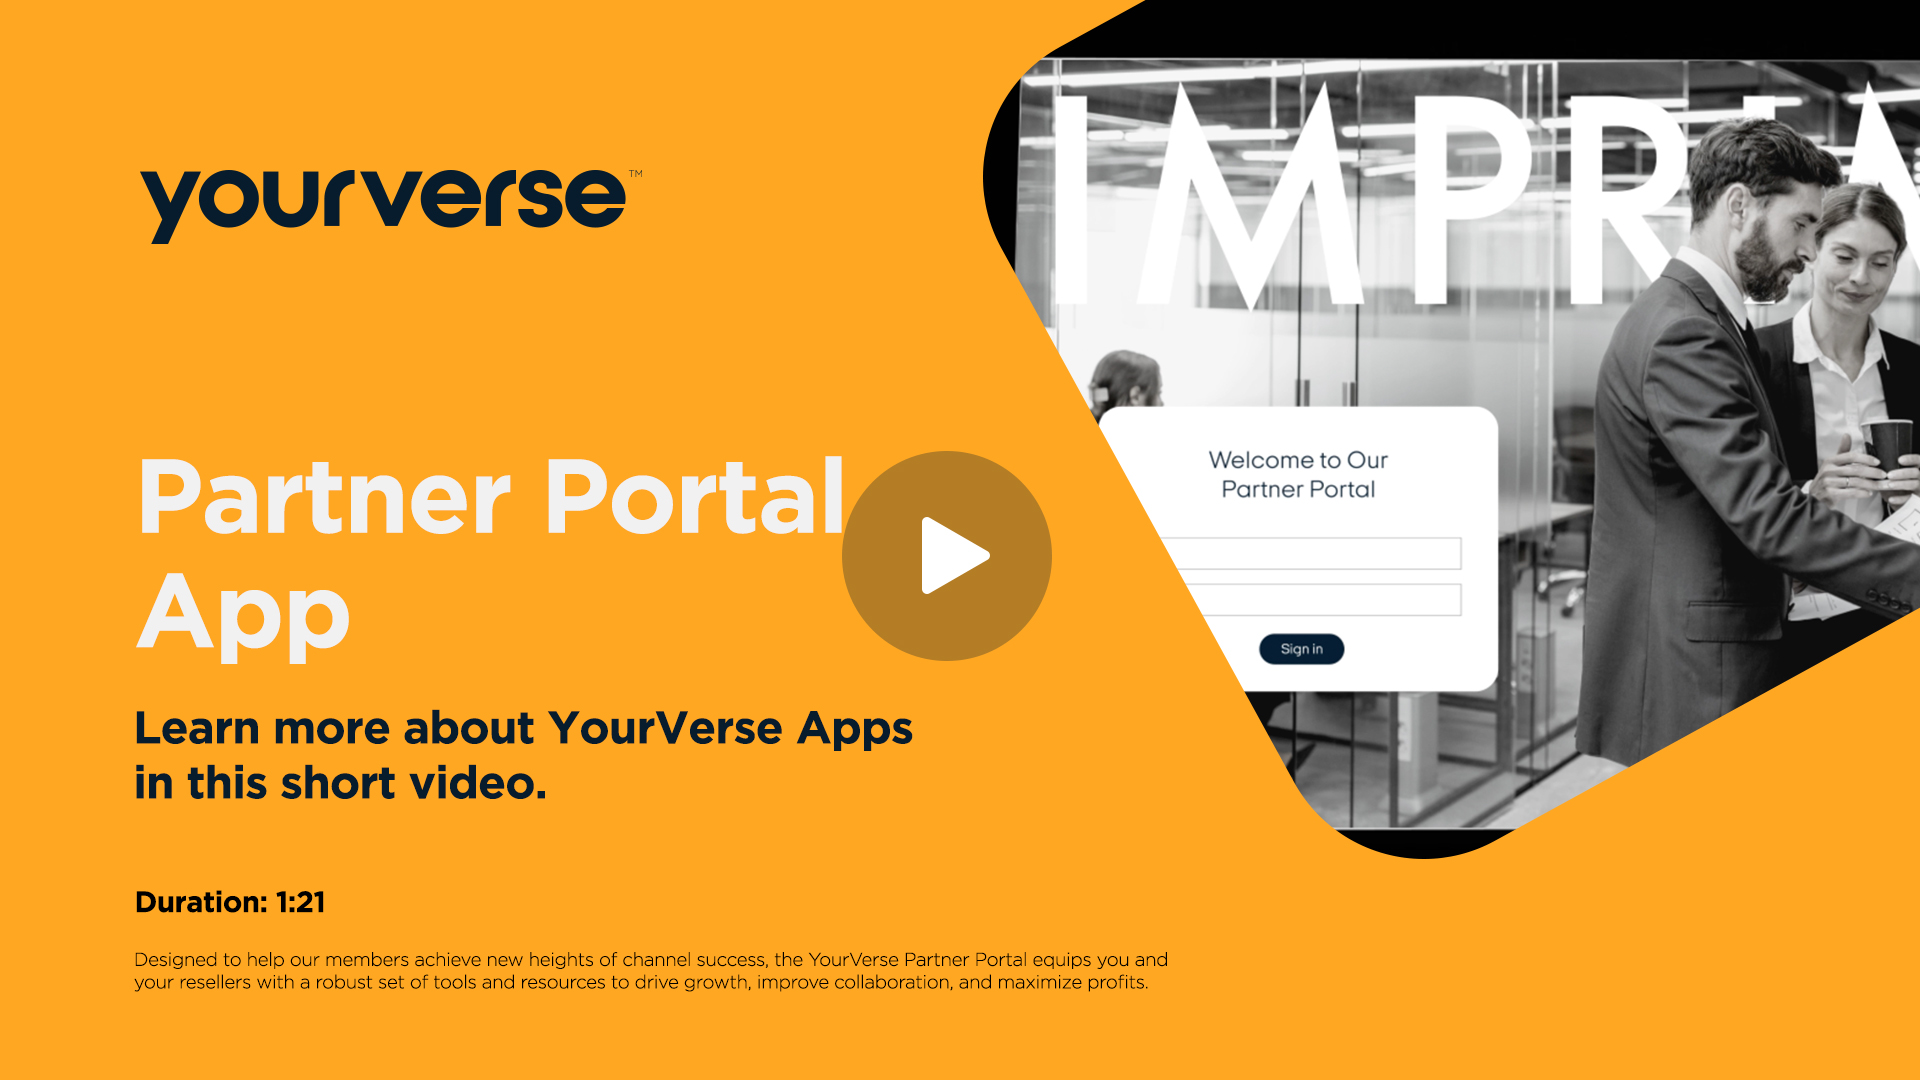 Partner Portal App